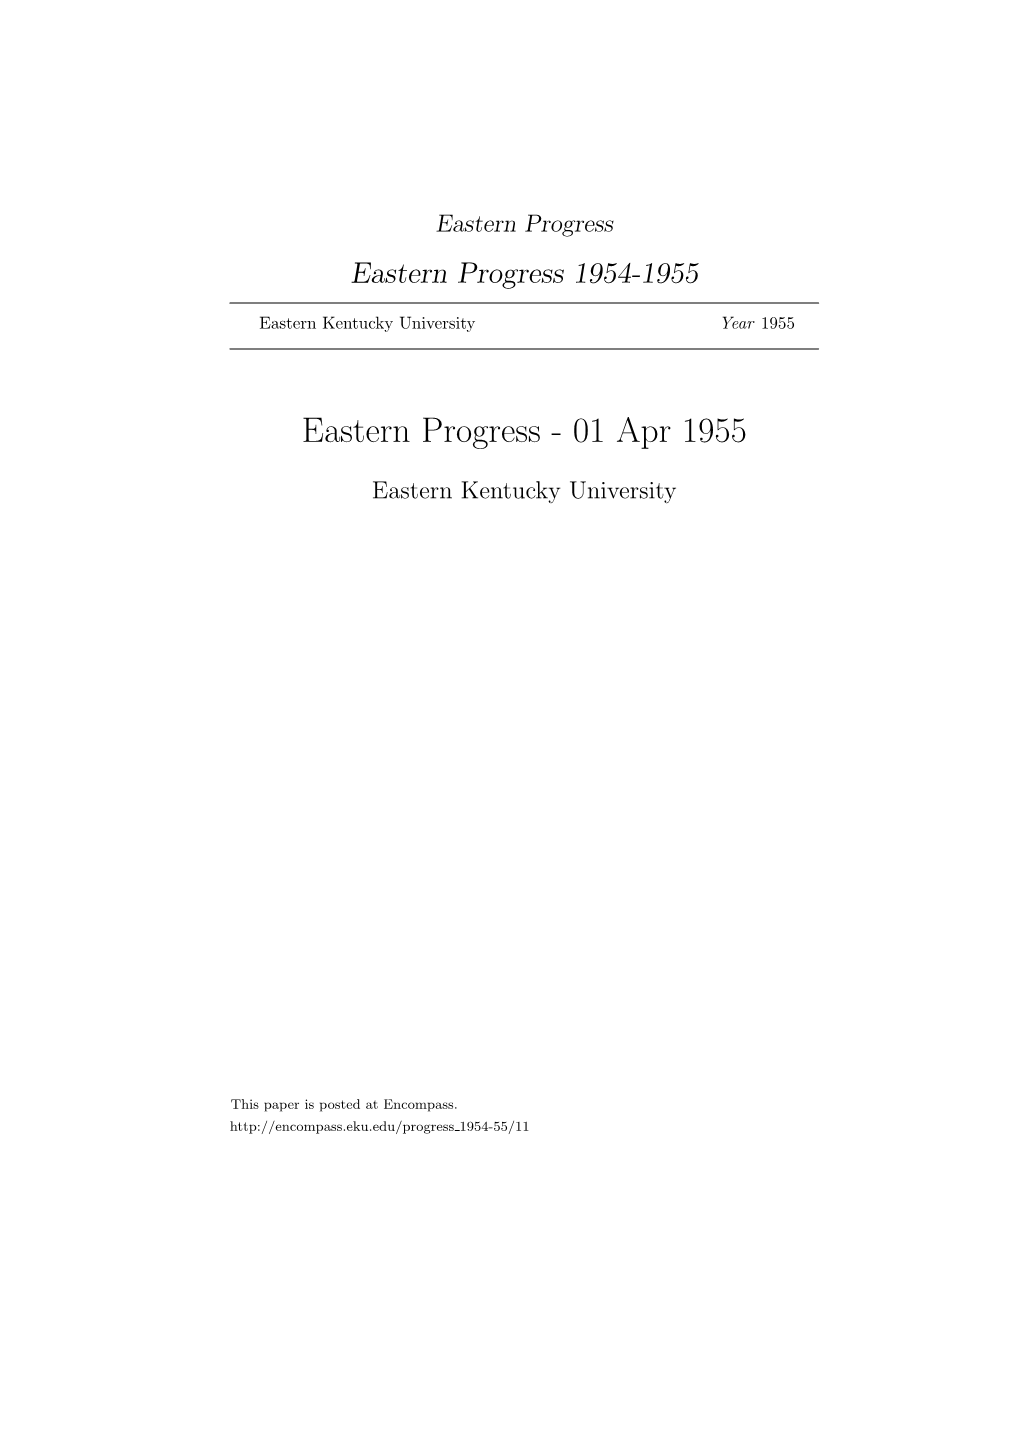 Eastern Progress Eastern Progress 1954-1955